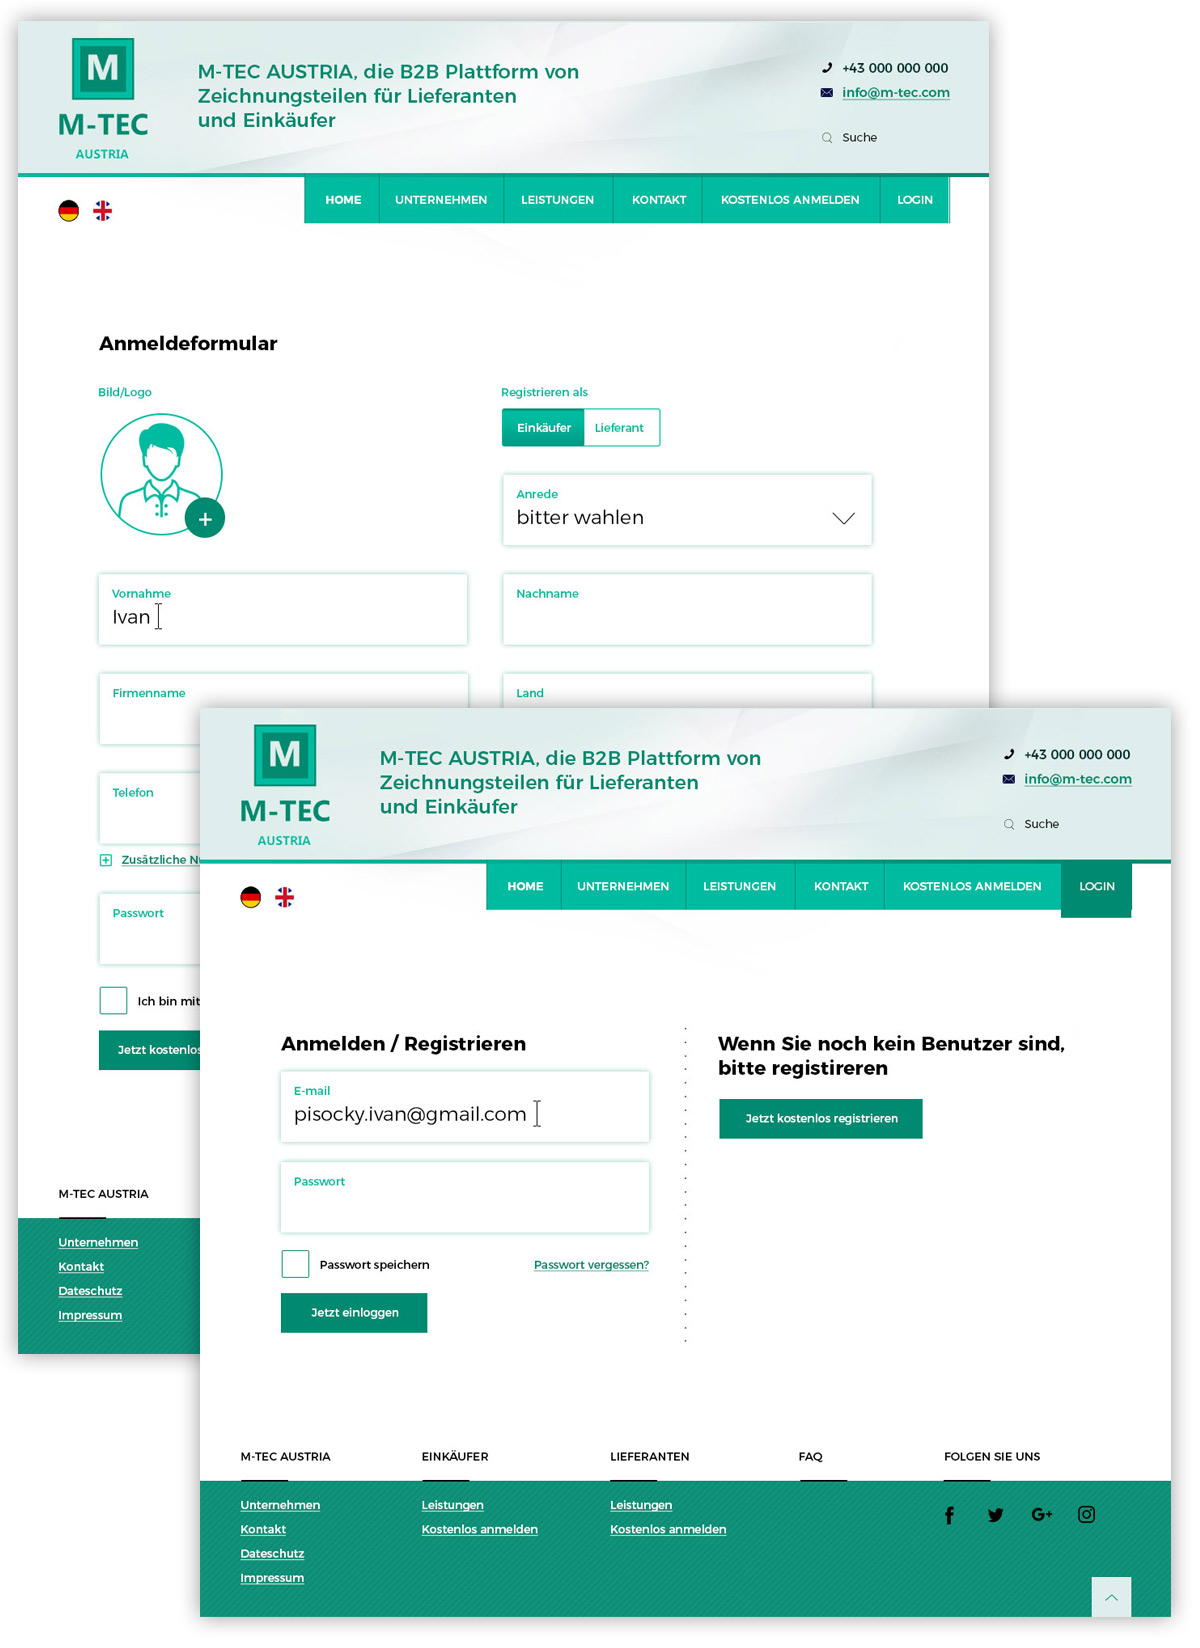 Дизайн сайта для M-TEC Austria - изображение 2